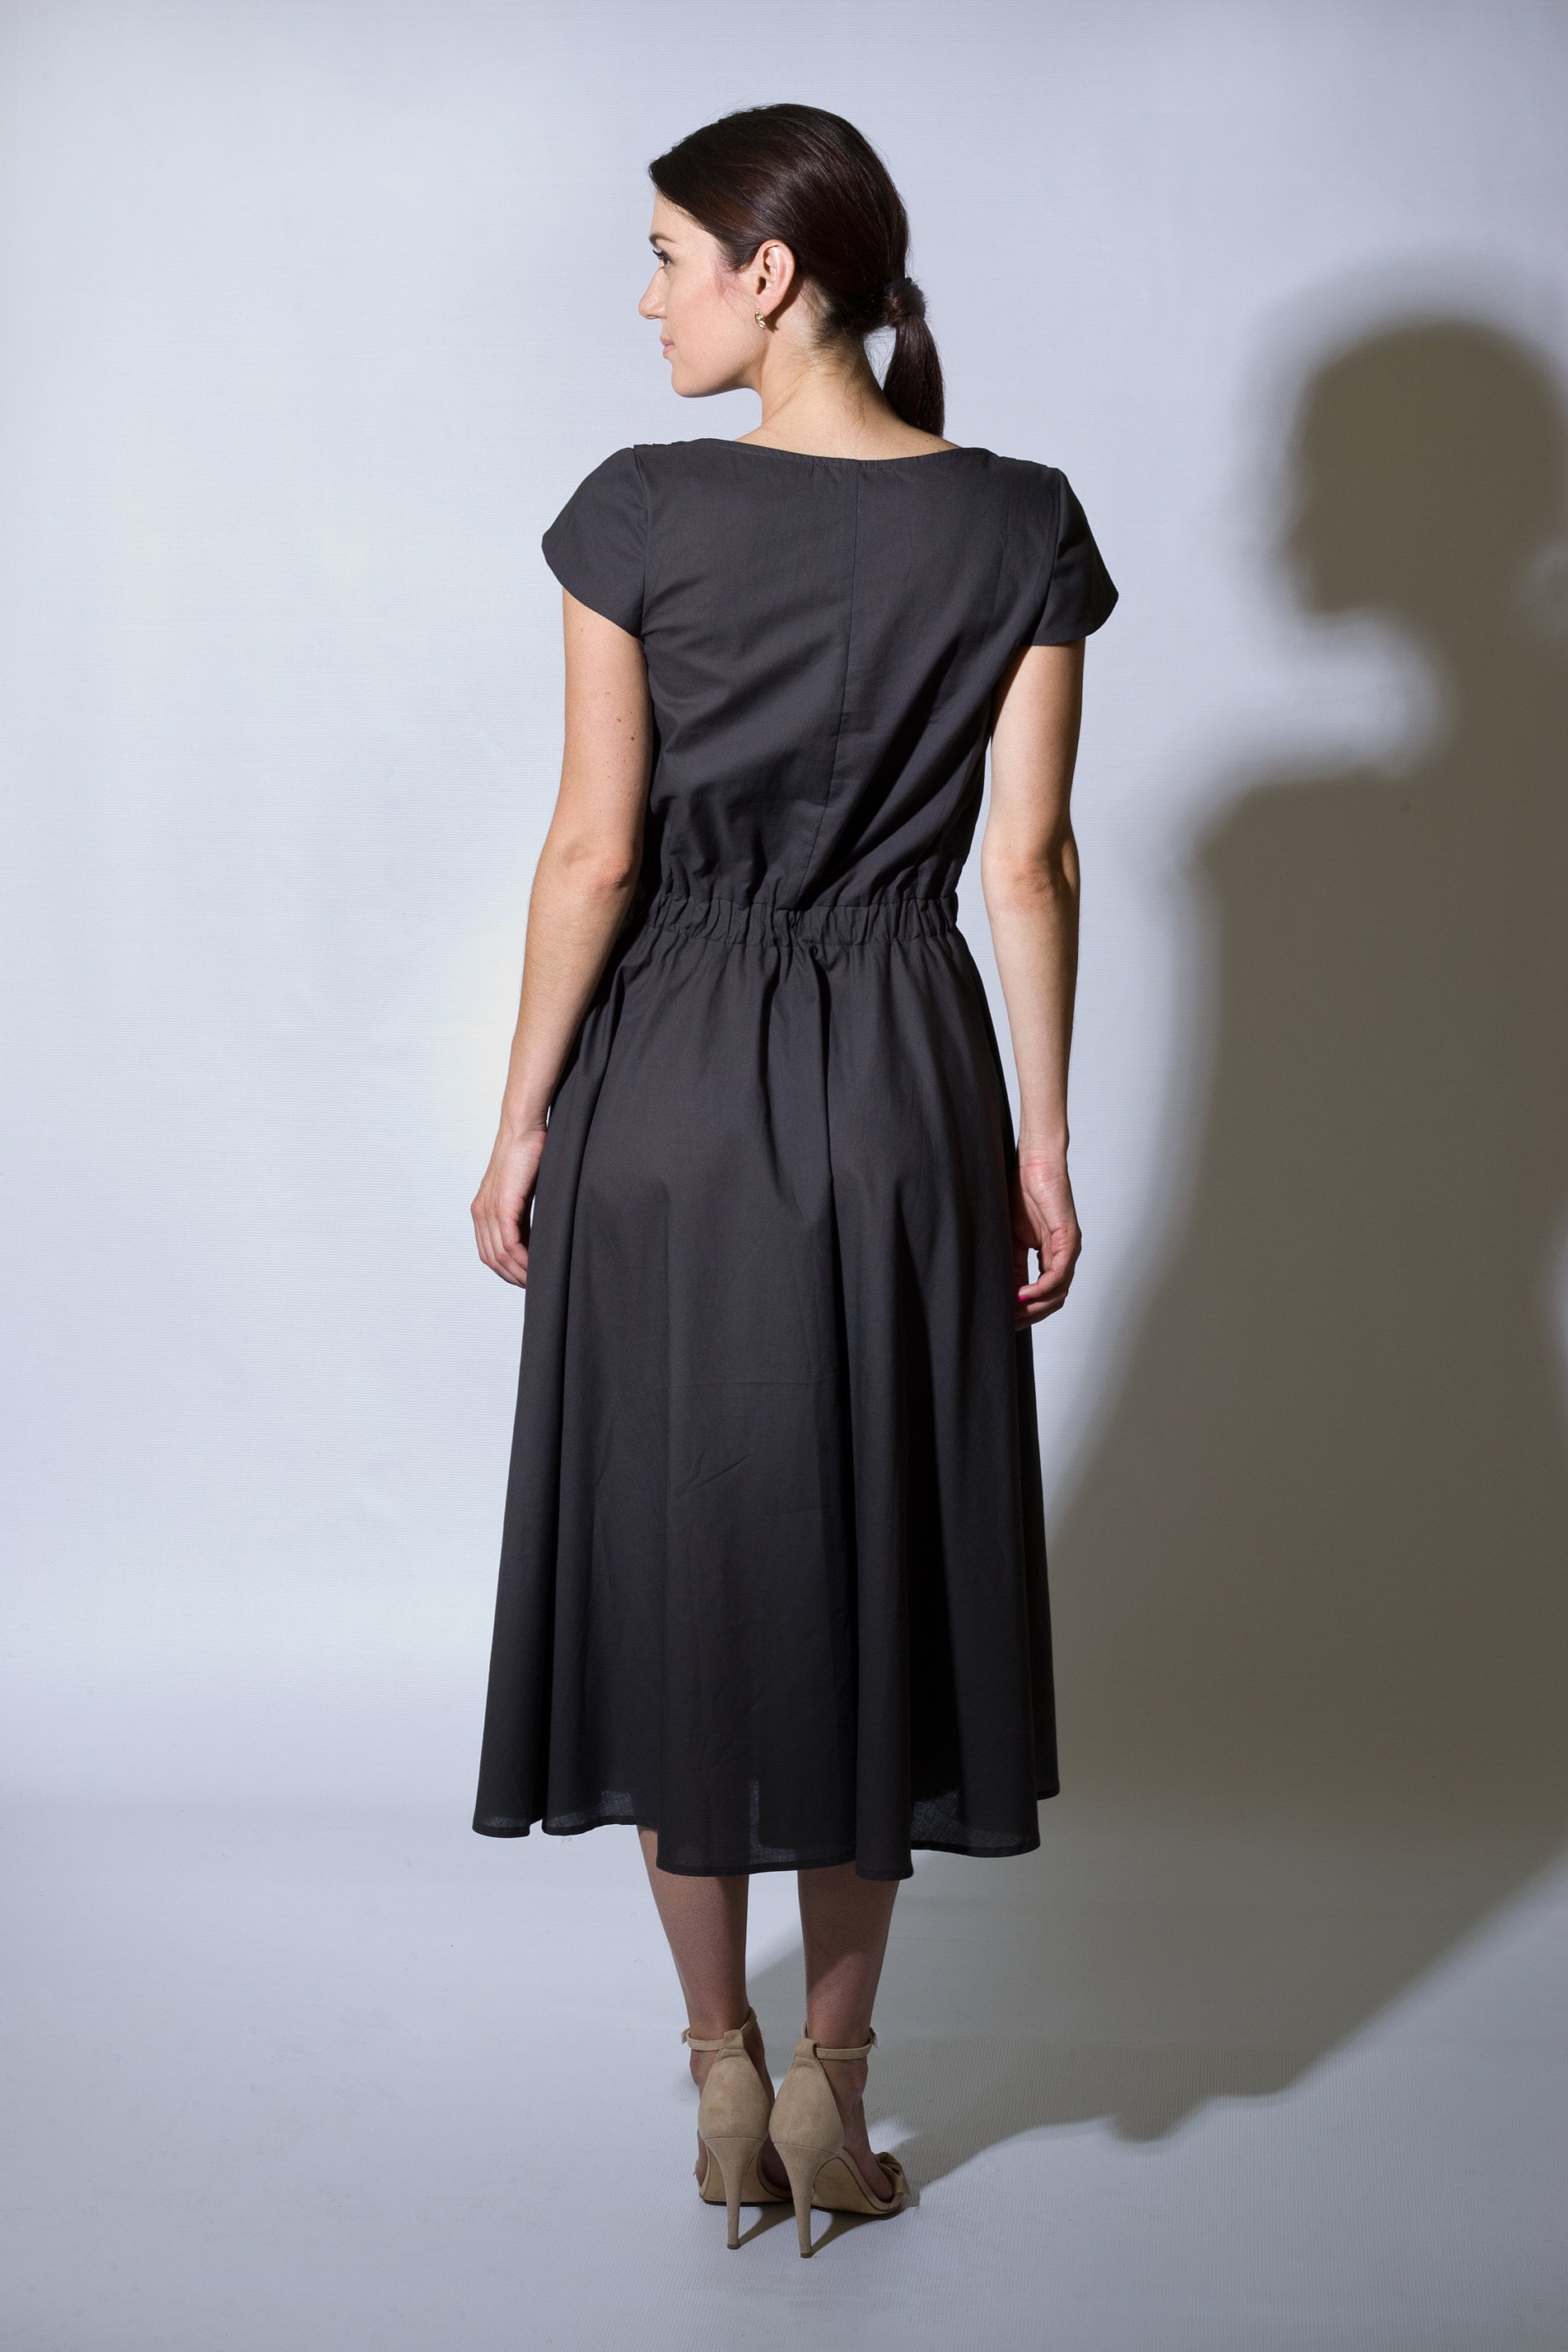 Summer Cotton Midi Dress Shirt Dresses for Women Sundress | Etsy